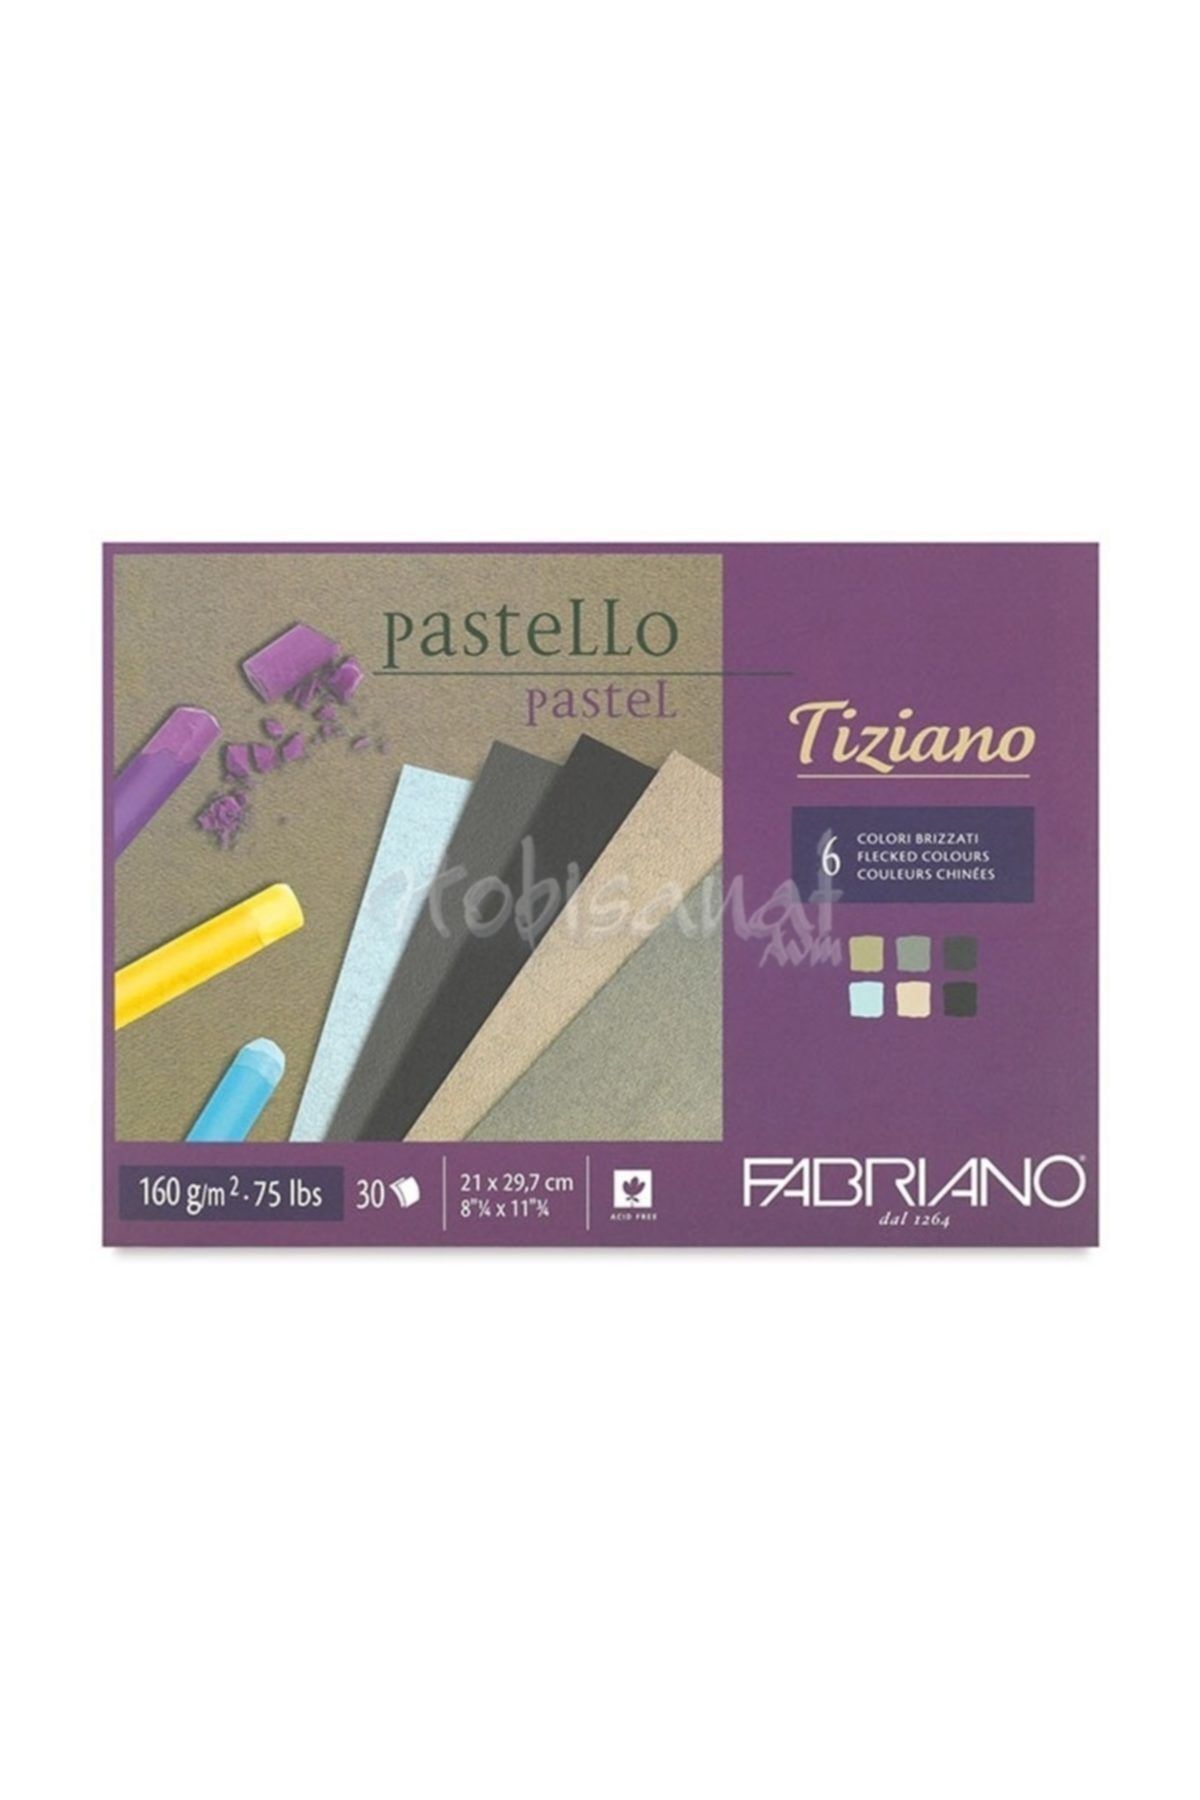 Fabriano Tiziano Pastel Blok 6 Brizzati Colours 160g 30 Sayfa A3